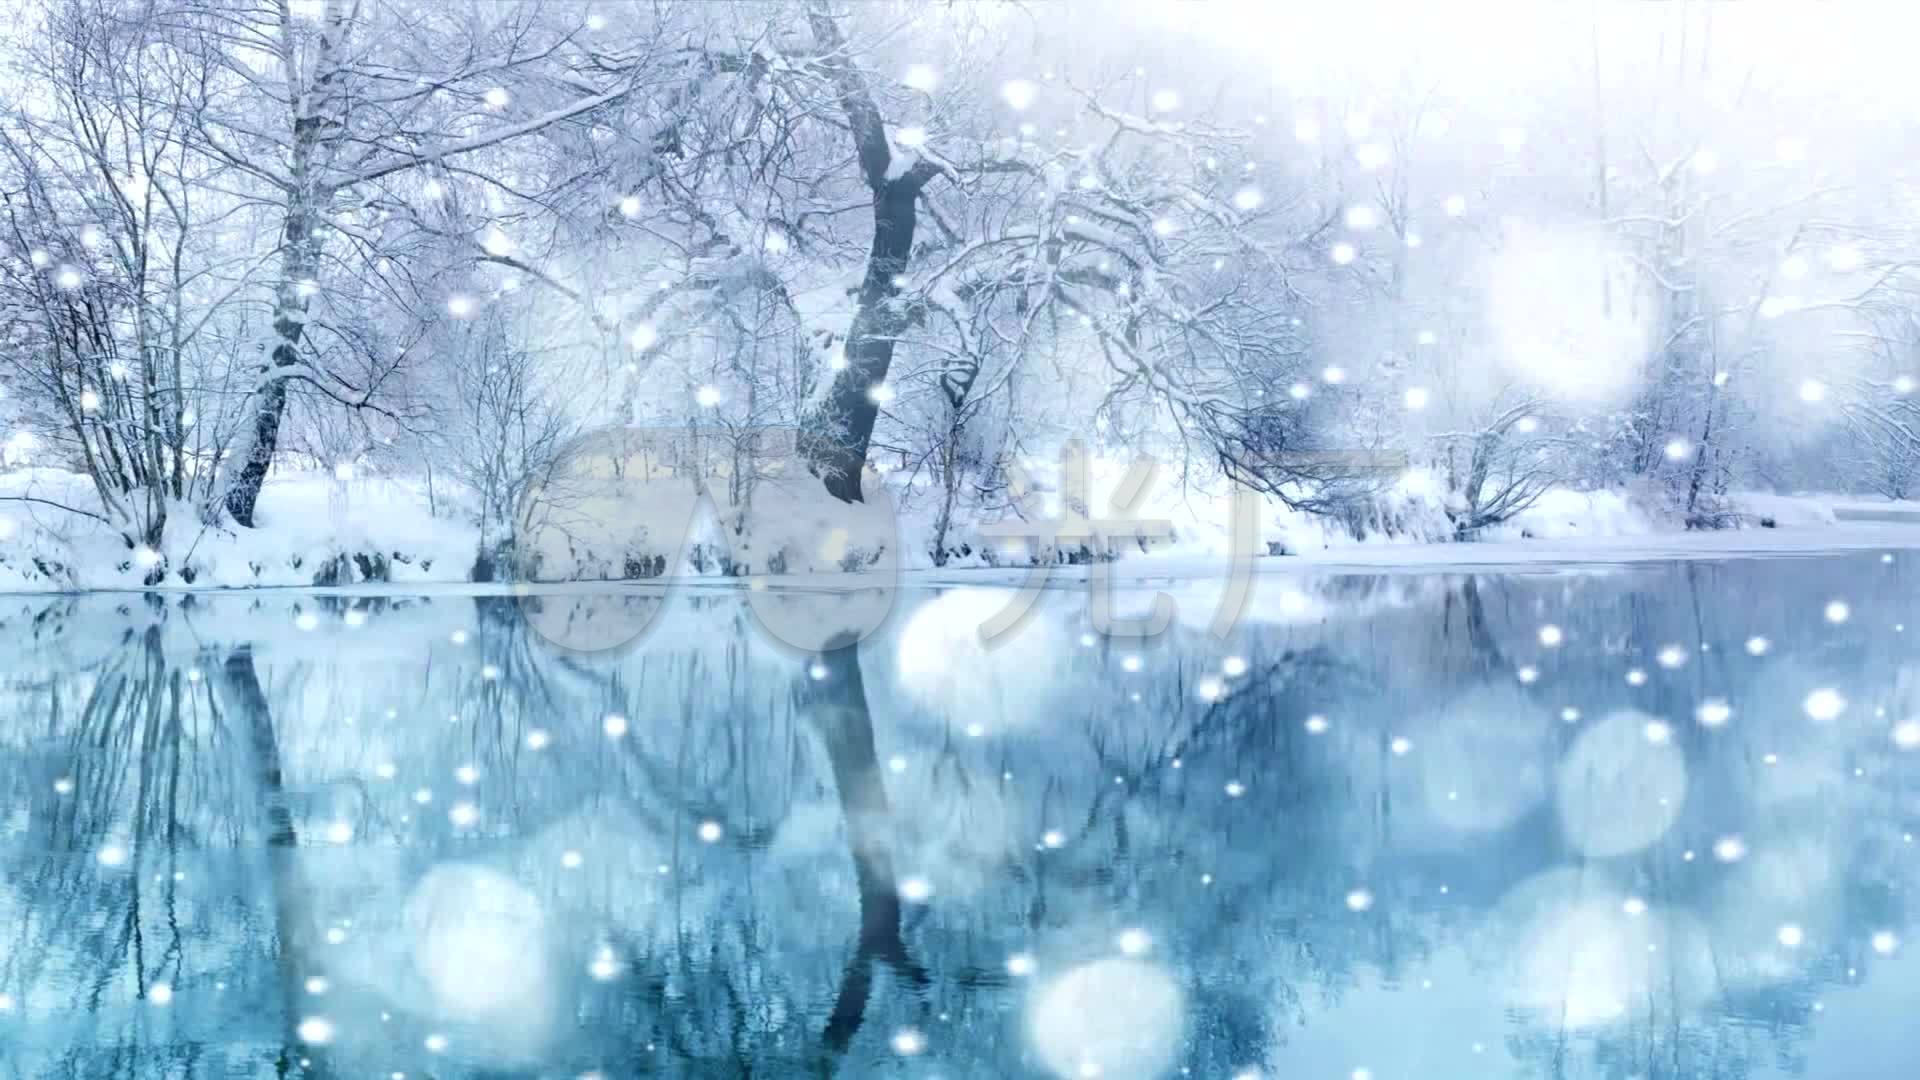 唯美浪漫雪景,下雪,雪花,冬季湖边风景